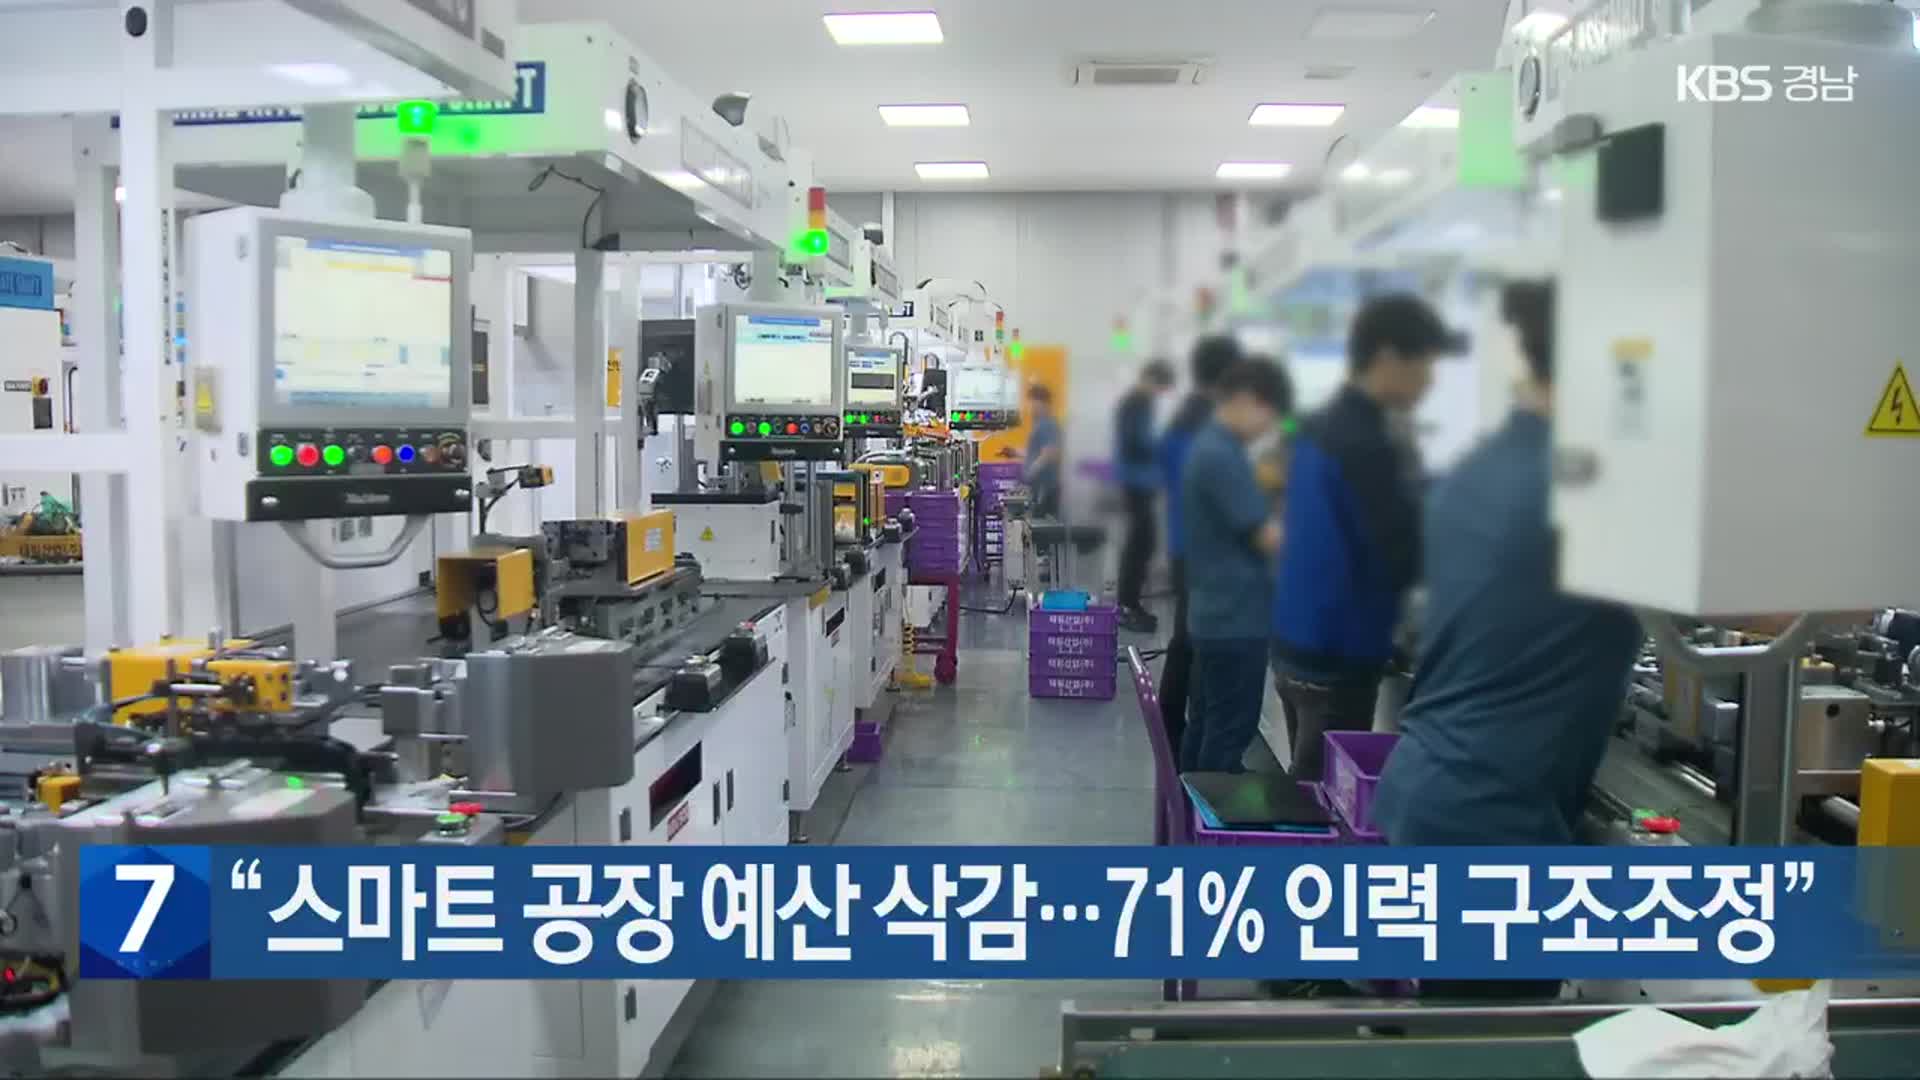 “스마트 공장 예산 삭감…71% 인력 구조조정”